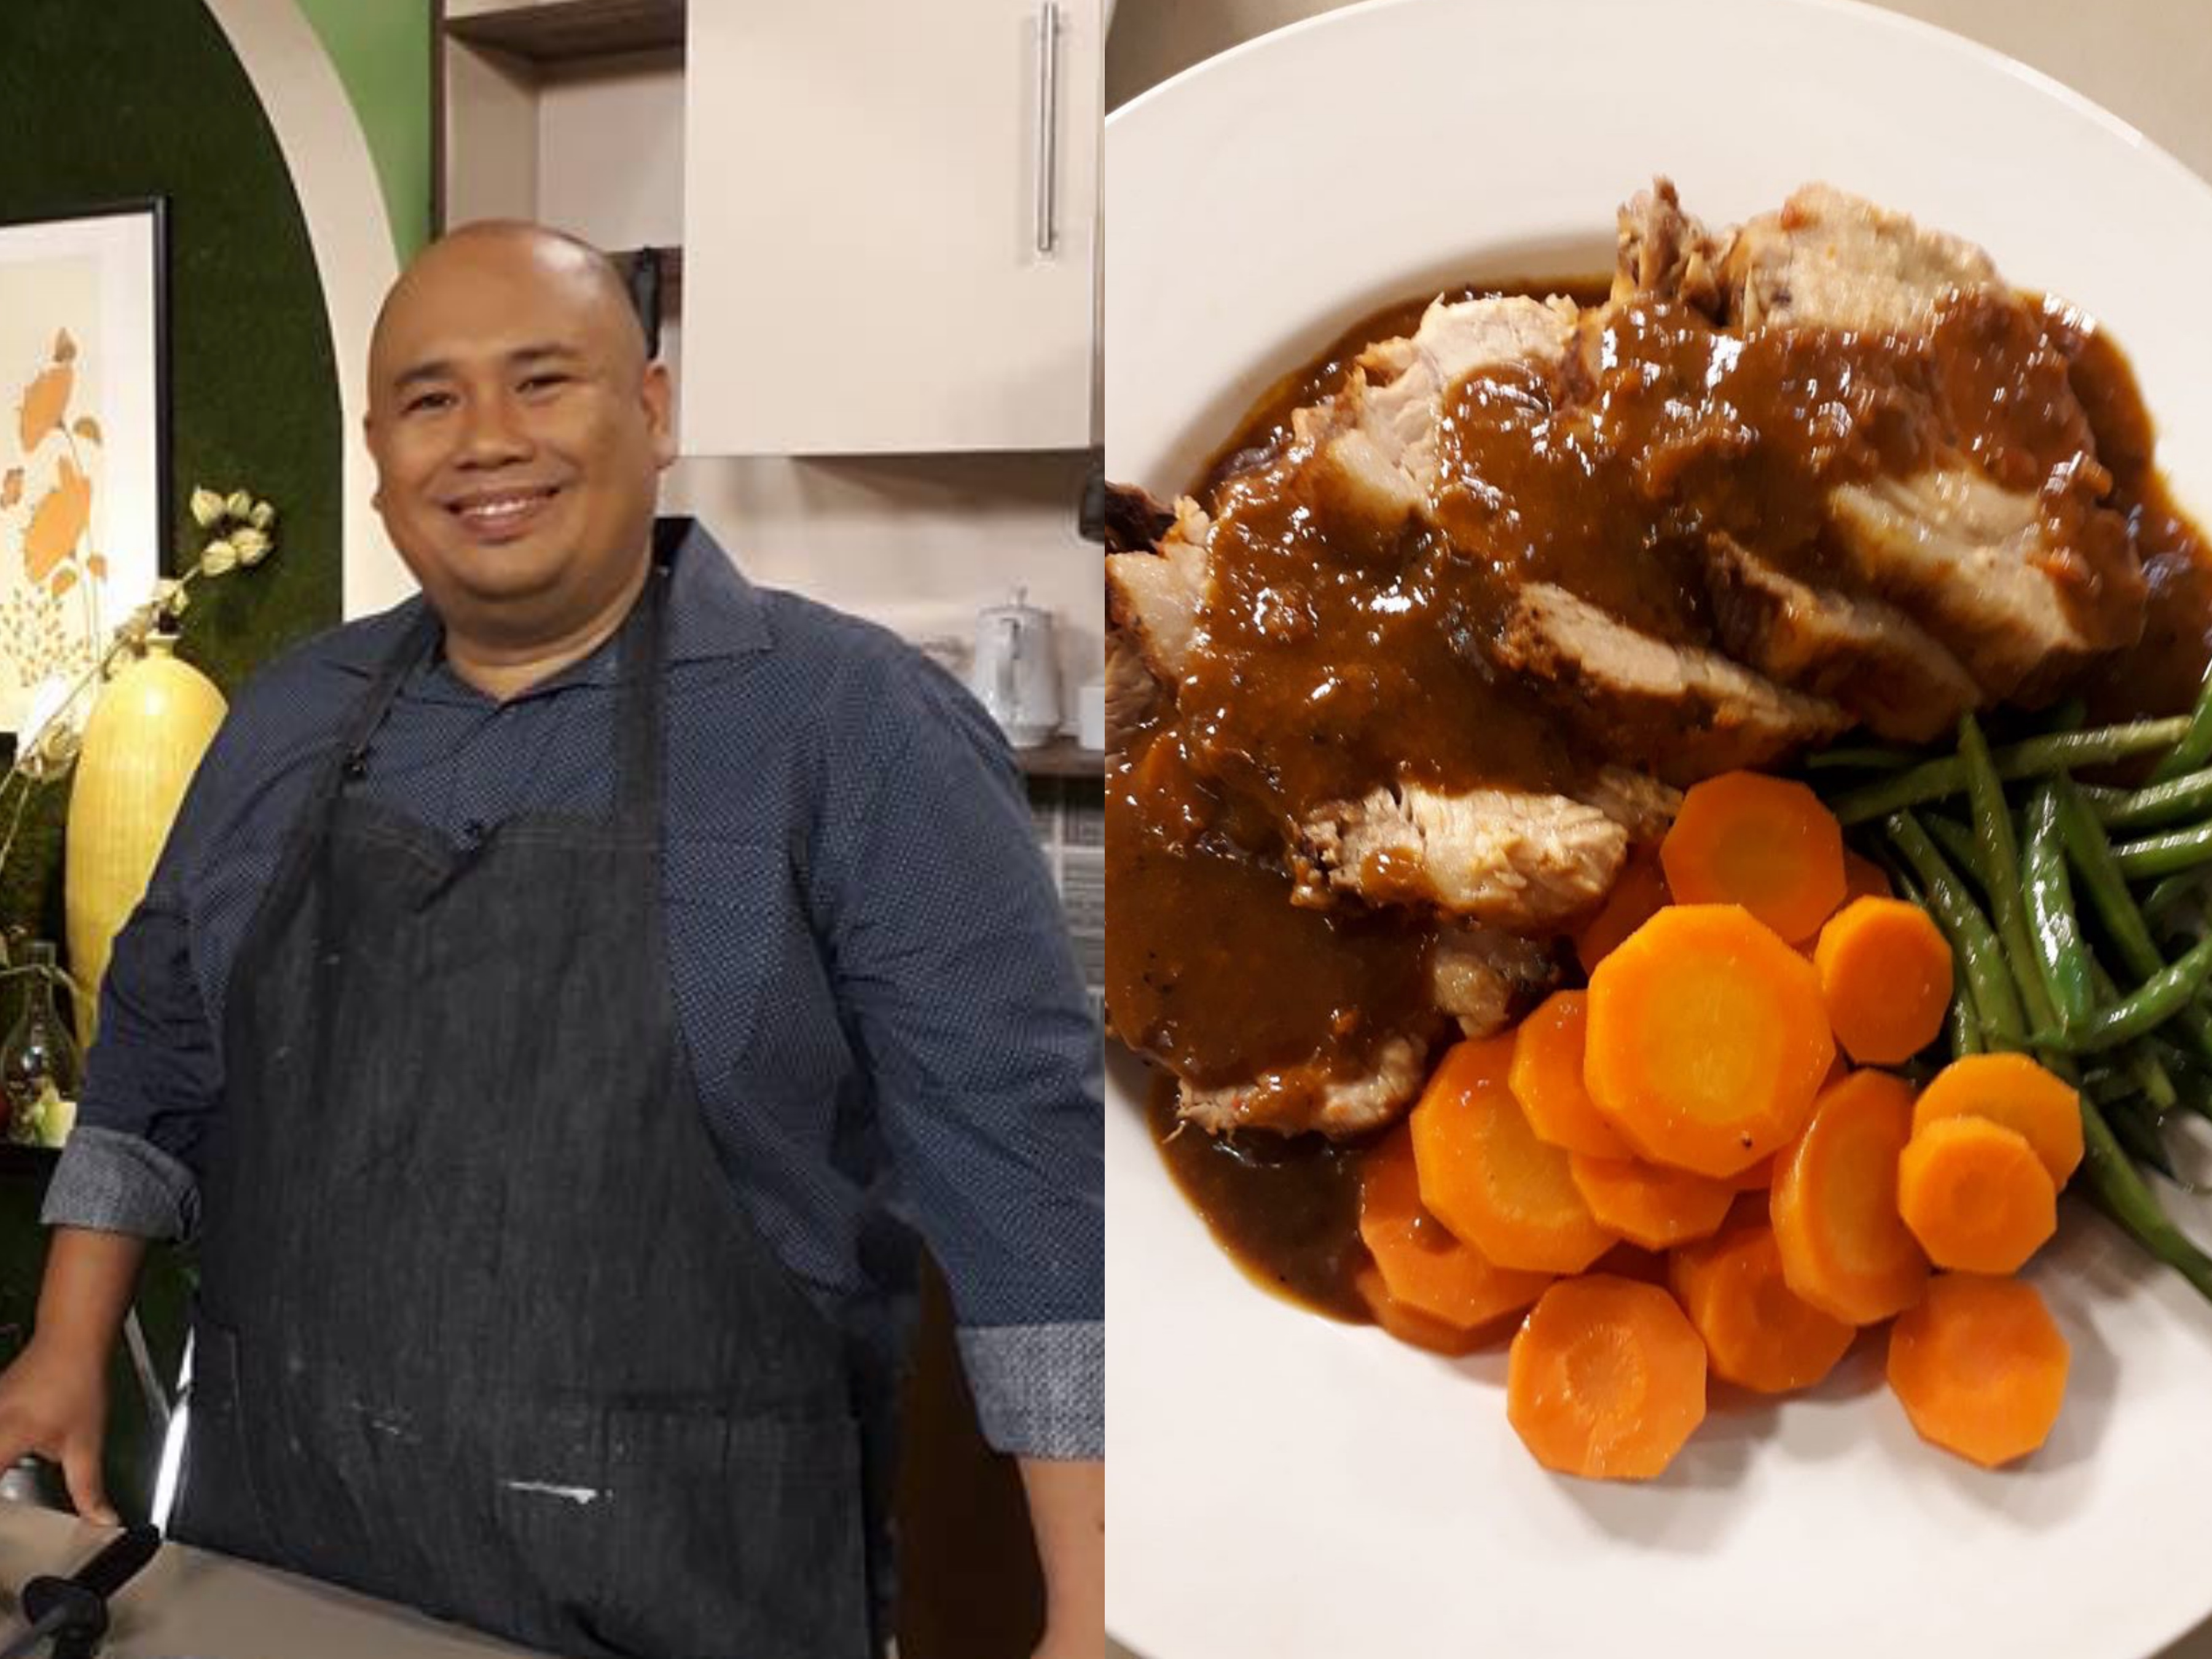 Chef Myke ‘Tatung’ Sarthou at the UKG set and his delectable Pot Roast. PHOTOS: Facebook/Myke Tatung Sarthou